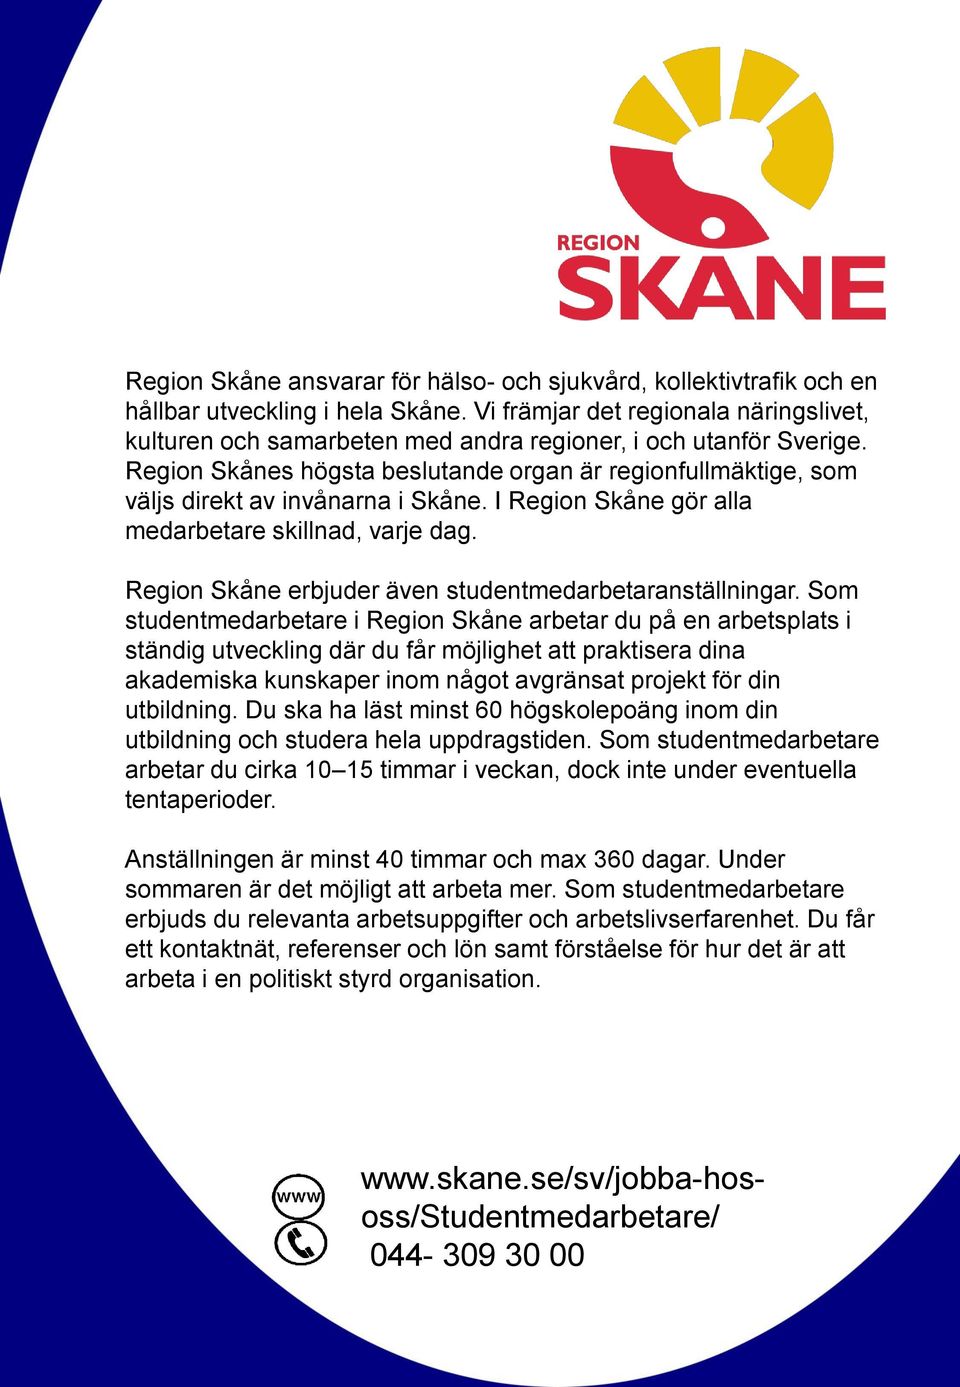 Region Skånes högsta beslutande organ är regionfullmäktige, som väljs direkt av invånarna i Skåne. I Region Skåne gör alla medarbetare skillnad, varje dag.